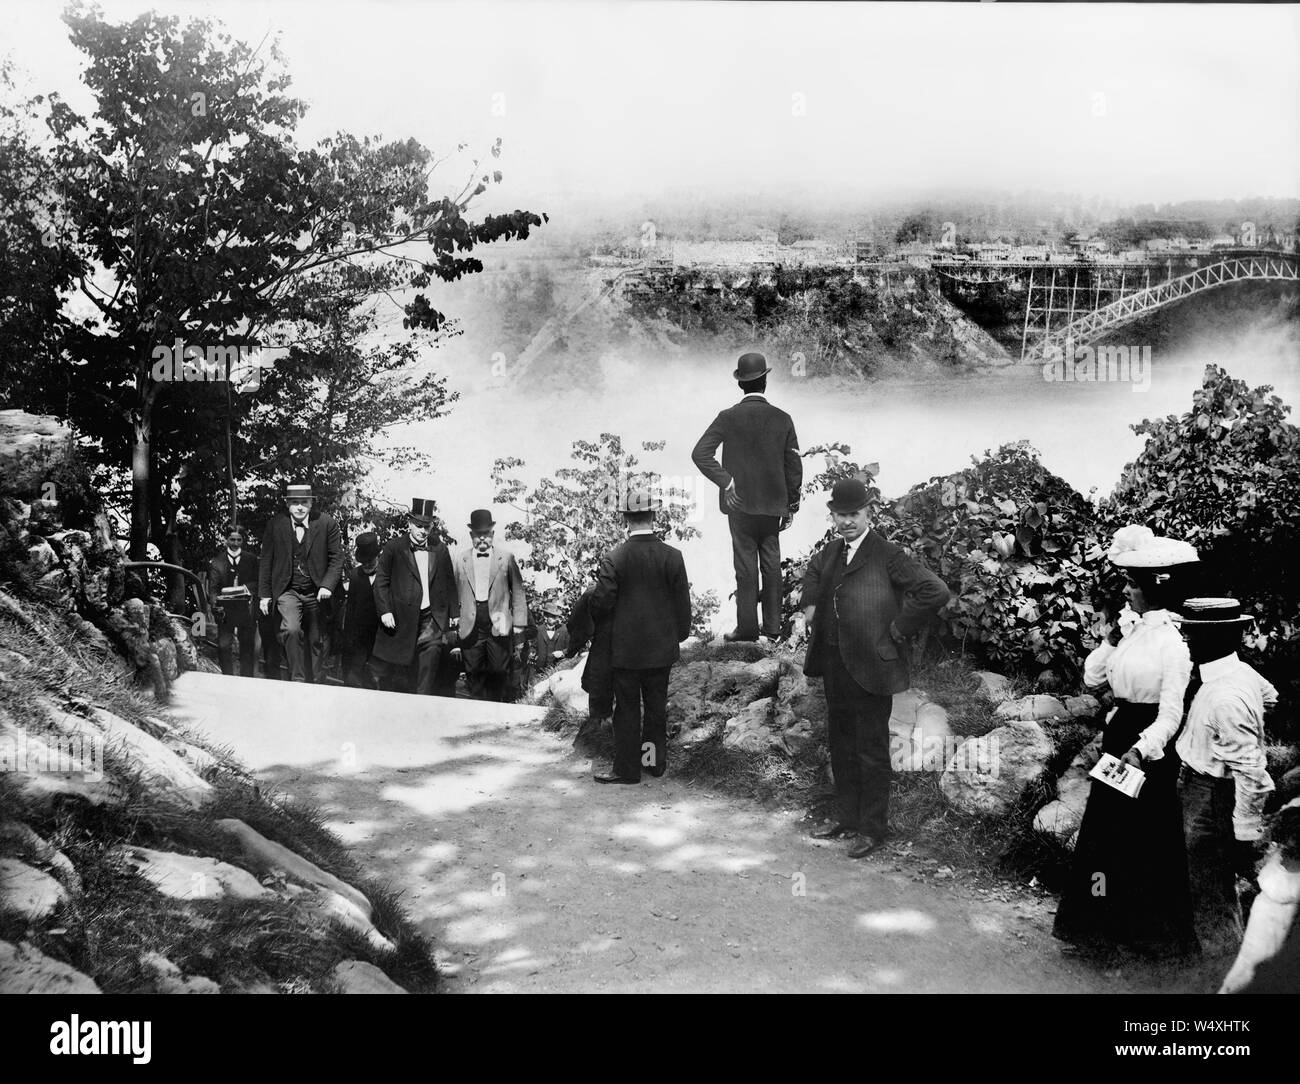 Le Président américain William McKinley marche sur route avec d'autres avec les Chutes du Niagara en arrière-plan lointain, Goat Island, New York, USA, photo de O.E. Dunlap, le 6 septembre 1901 Banque D'Images